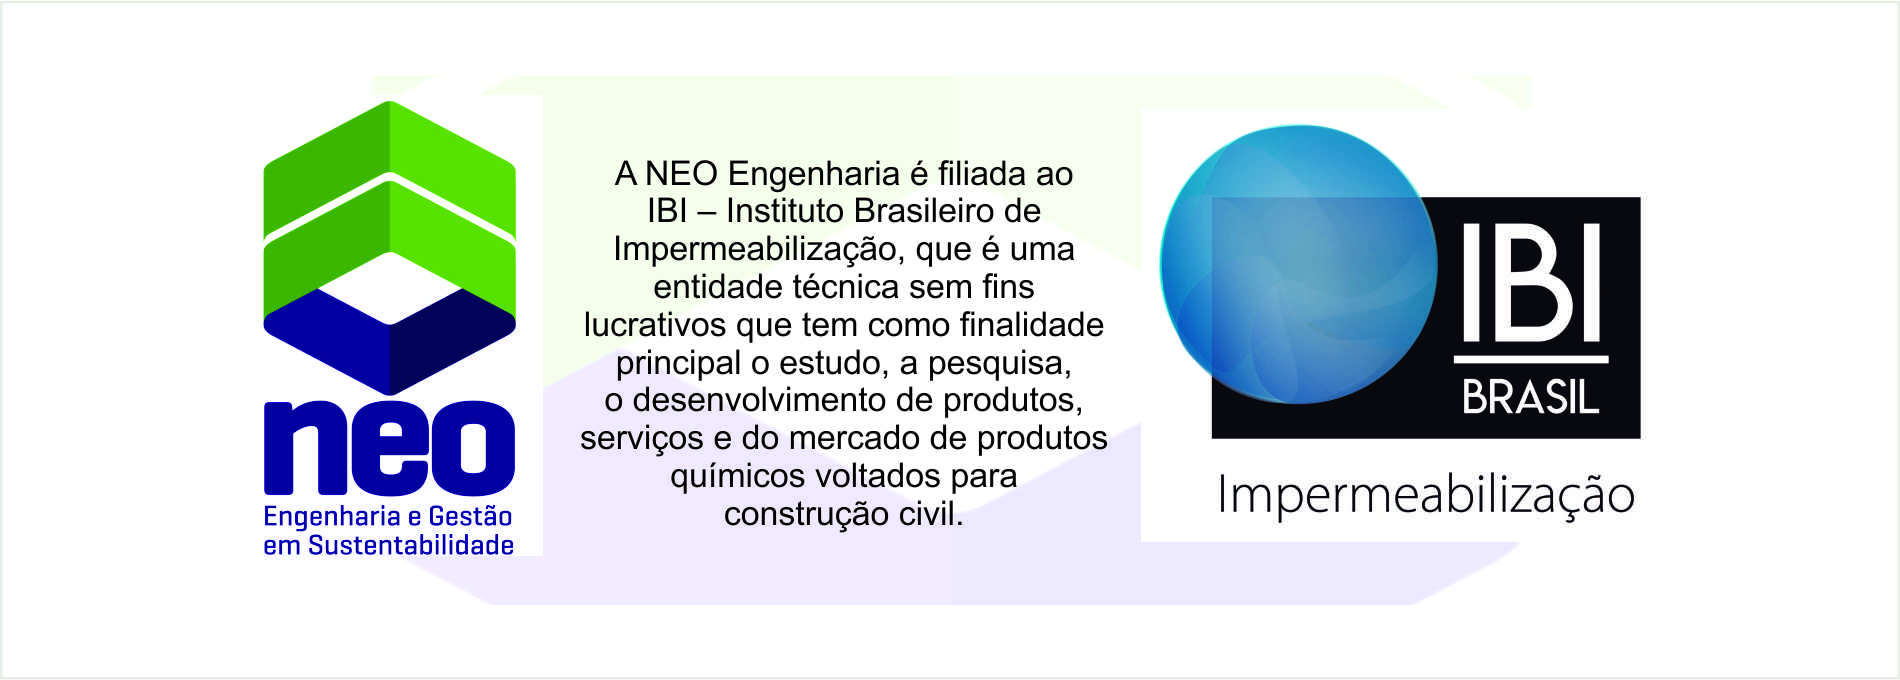 IBI – Instituto de Impermeabilização